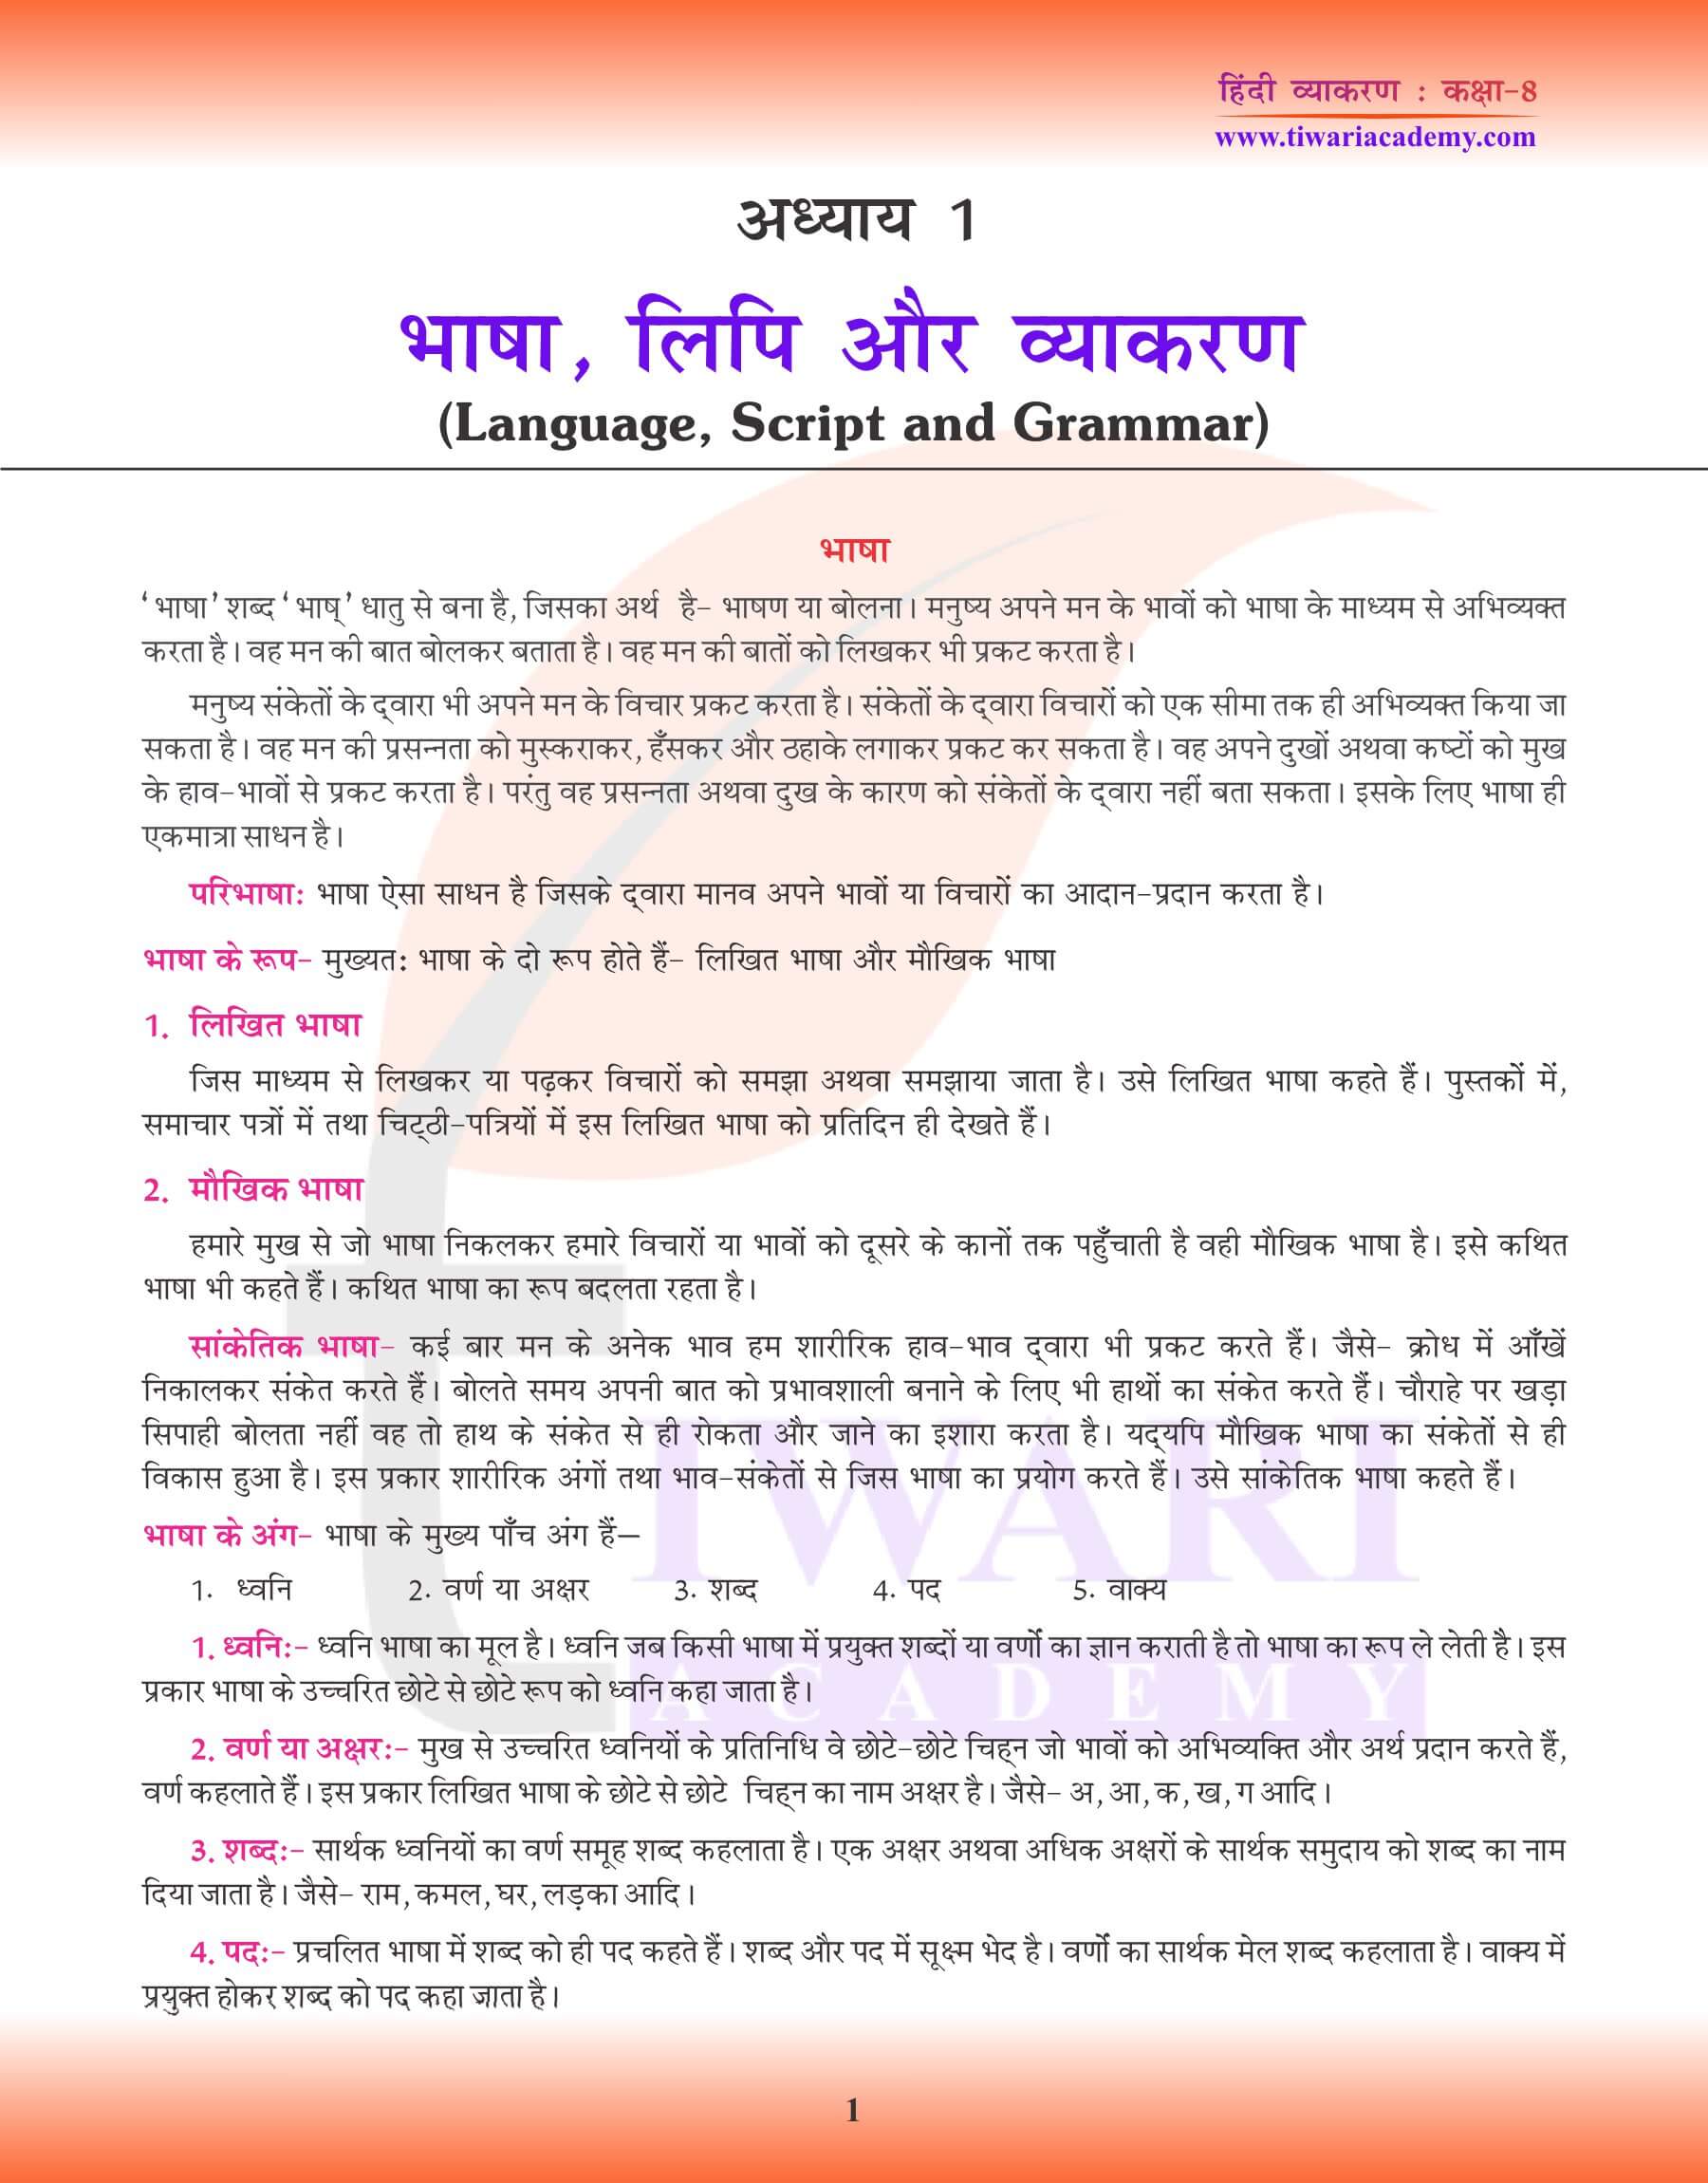 कक्षा 8 हिंदी व्याकरण अध्याय 1 भाषा और व्याकरण अभ्यास पुस्तिका